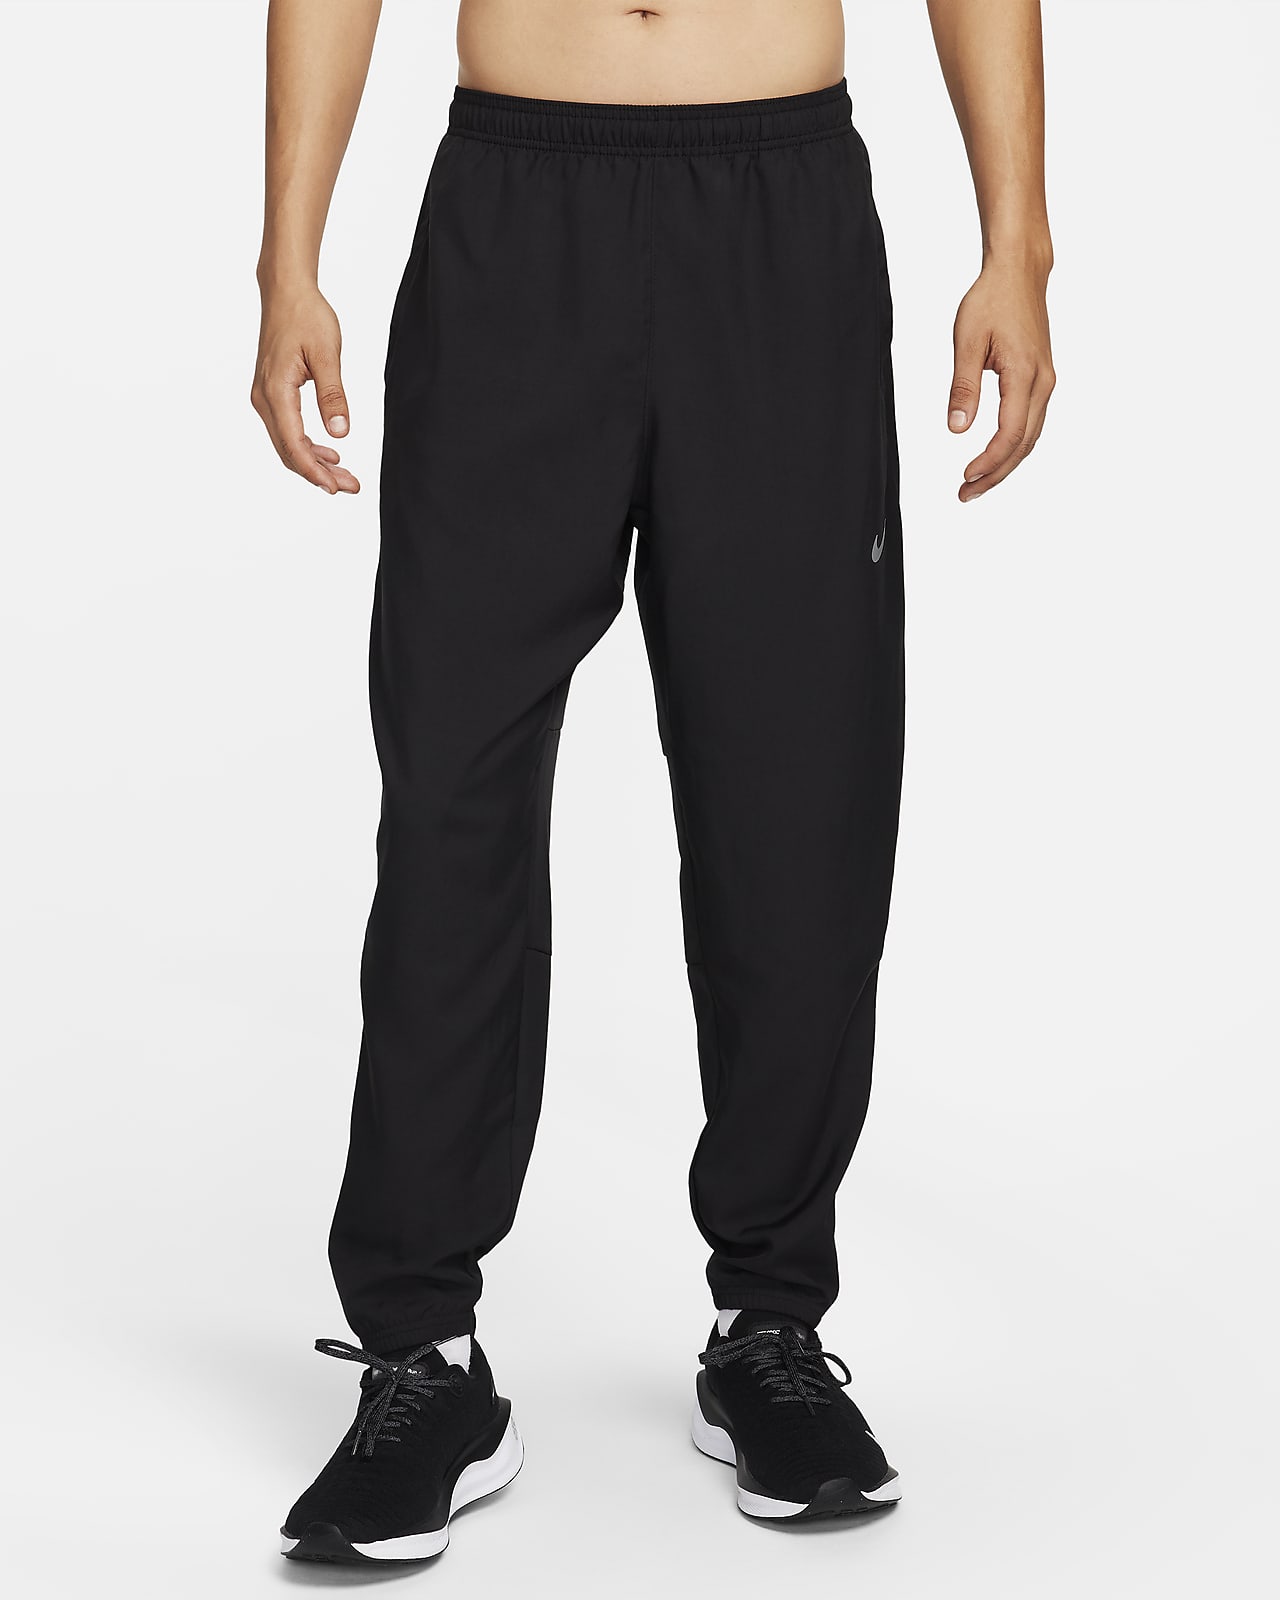 Ανδρικό υφαντό παντελόνι για τρέξιμο Dri-FIT Nike Challenger